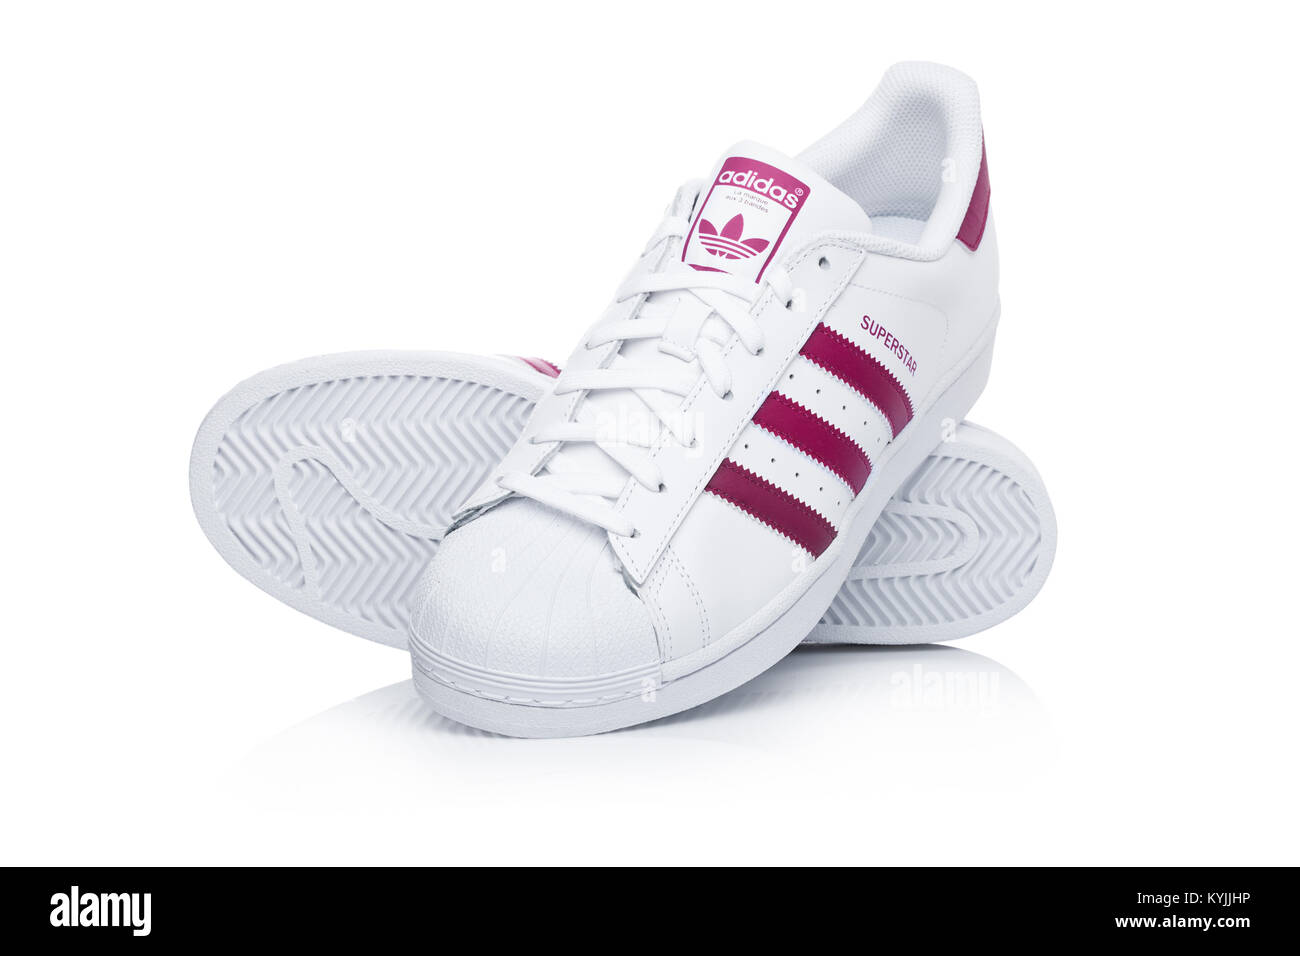 Londres, Royaume-Uni - 12 janvier 2018 : Adidas Originals Superstar  chaussures rouges sur fond blanc.La multinationale allemande qui conçoit et  fabrique Photo Stock - Alamy